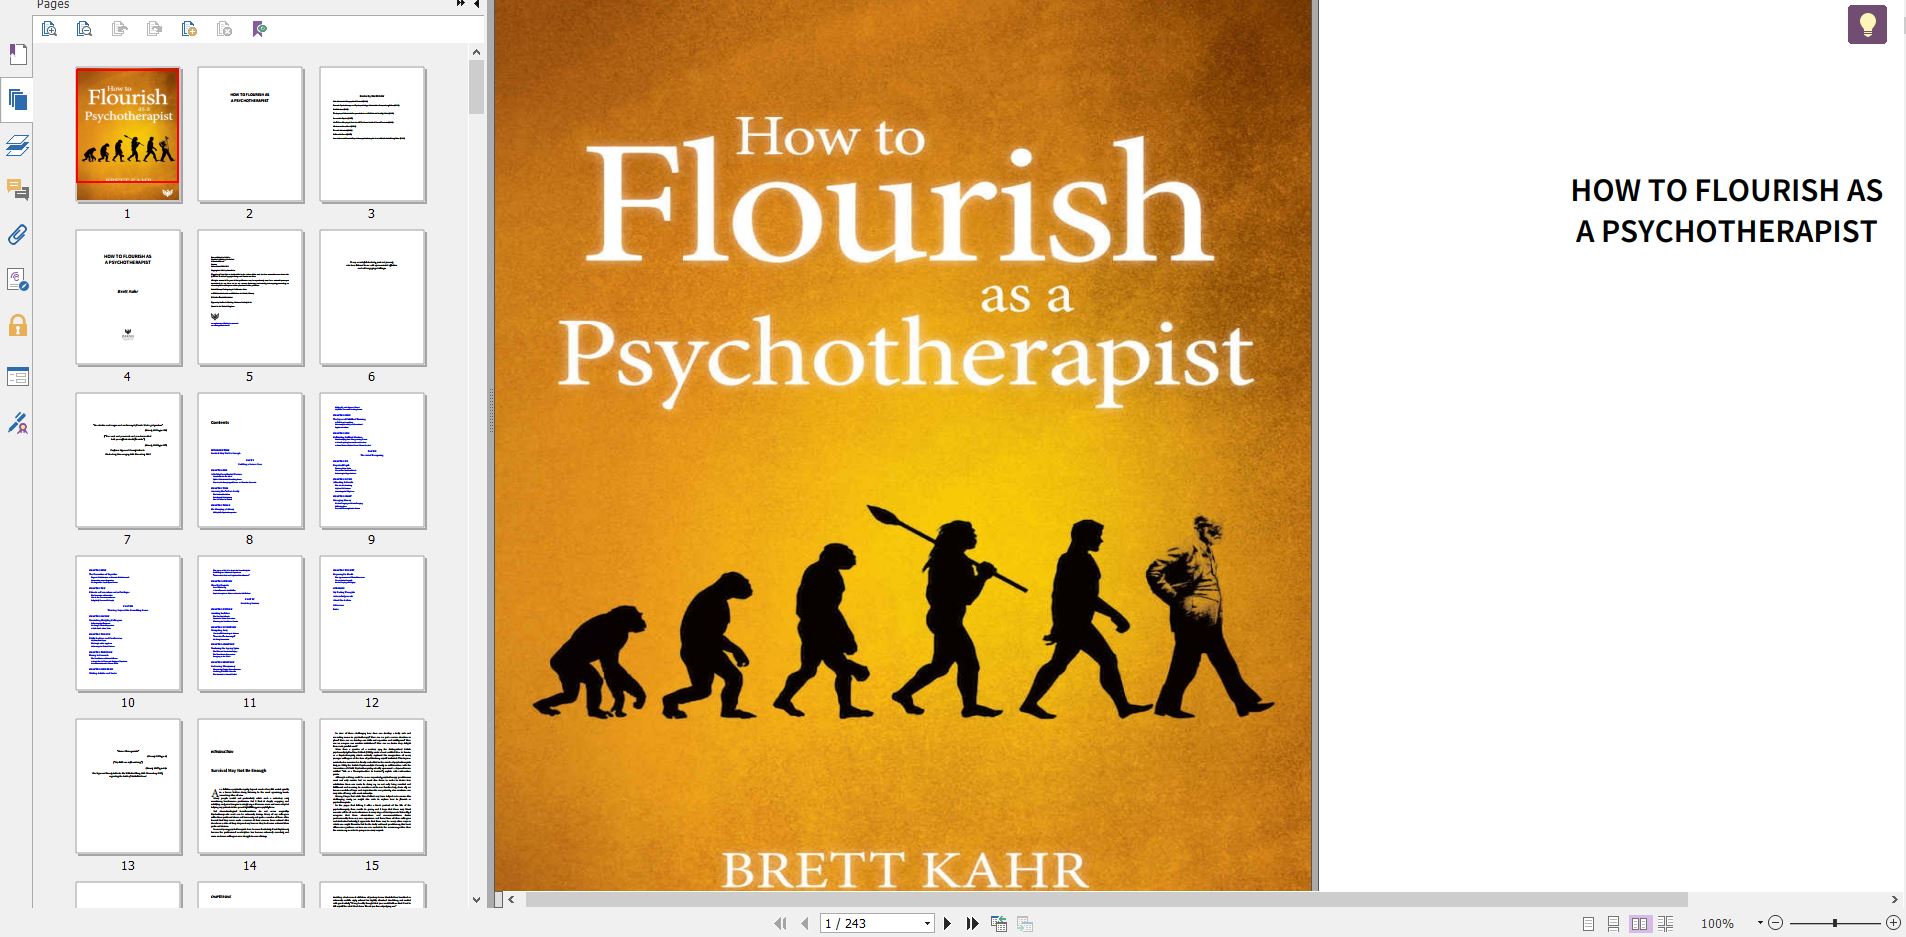 خرید کیندل امازون How to Flourish as a Psychotherapist دانلود ایبوک Brett Kahr در فرمت epub , azw و PDF ایبوک روانشناسی کتاب روان درمانی ایبوک روان شناسی بالینی خرید کتاب کیندل از Amazon دانلود کیندل خرید کتاب کیندل از آمازون گیگاپیپر